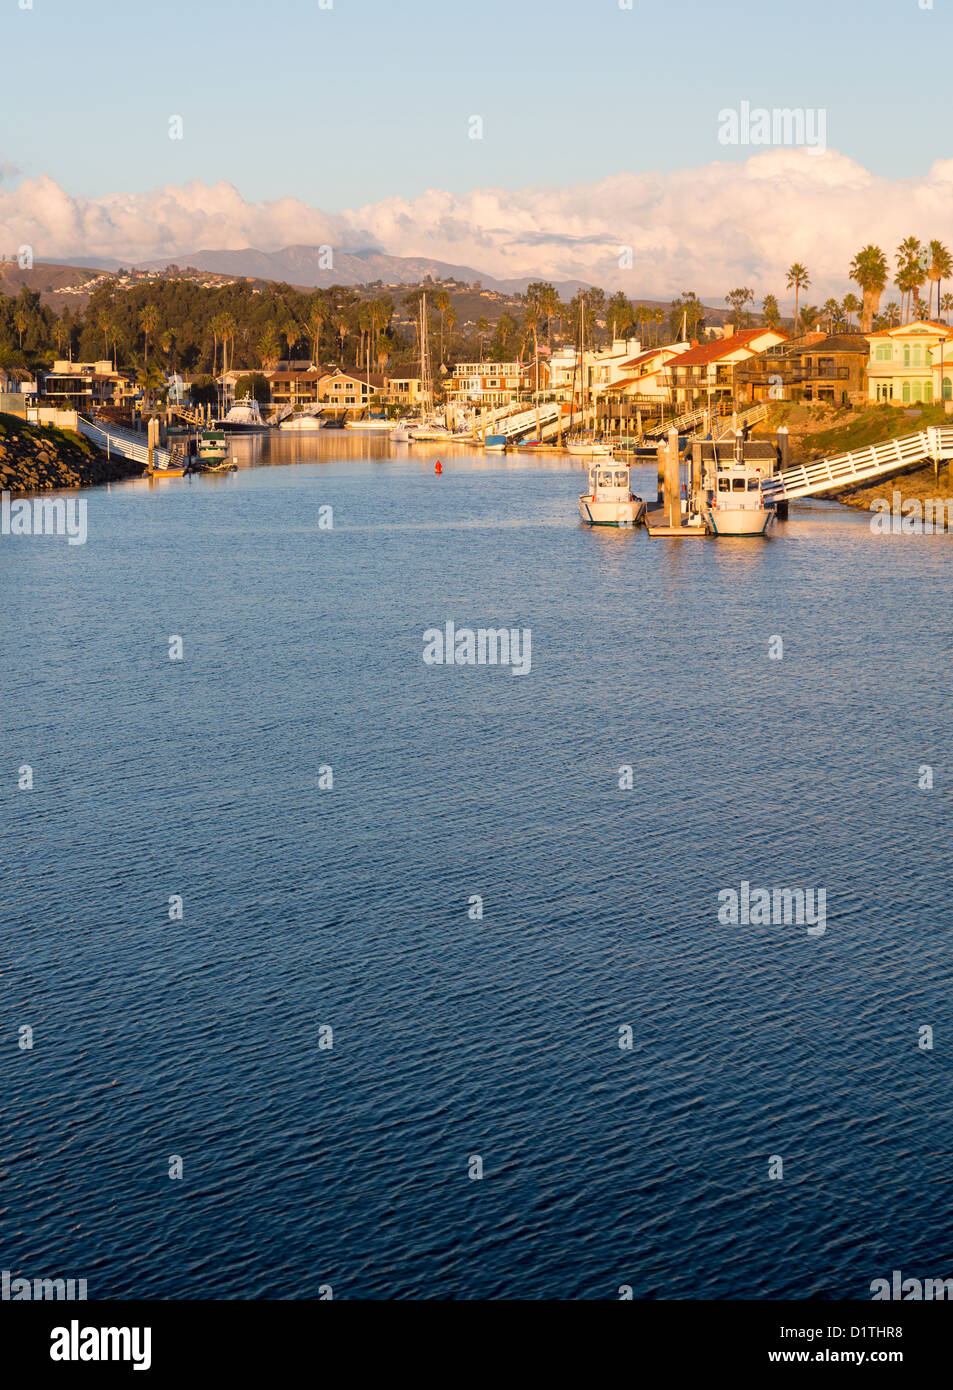 Tramonto su sviluppo residenziale da acqua a Ventura California con case moderne e yacht barche Foto Stock